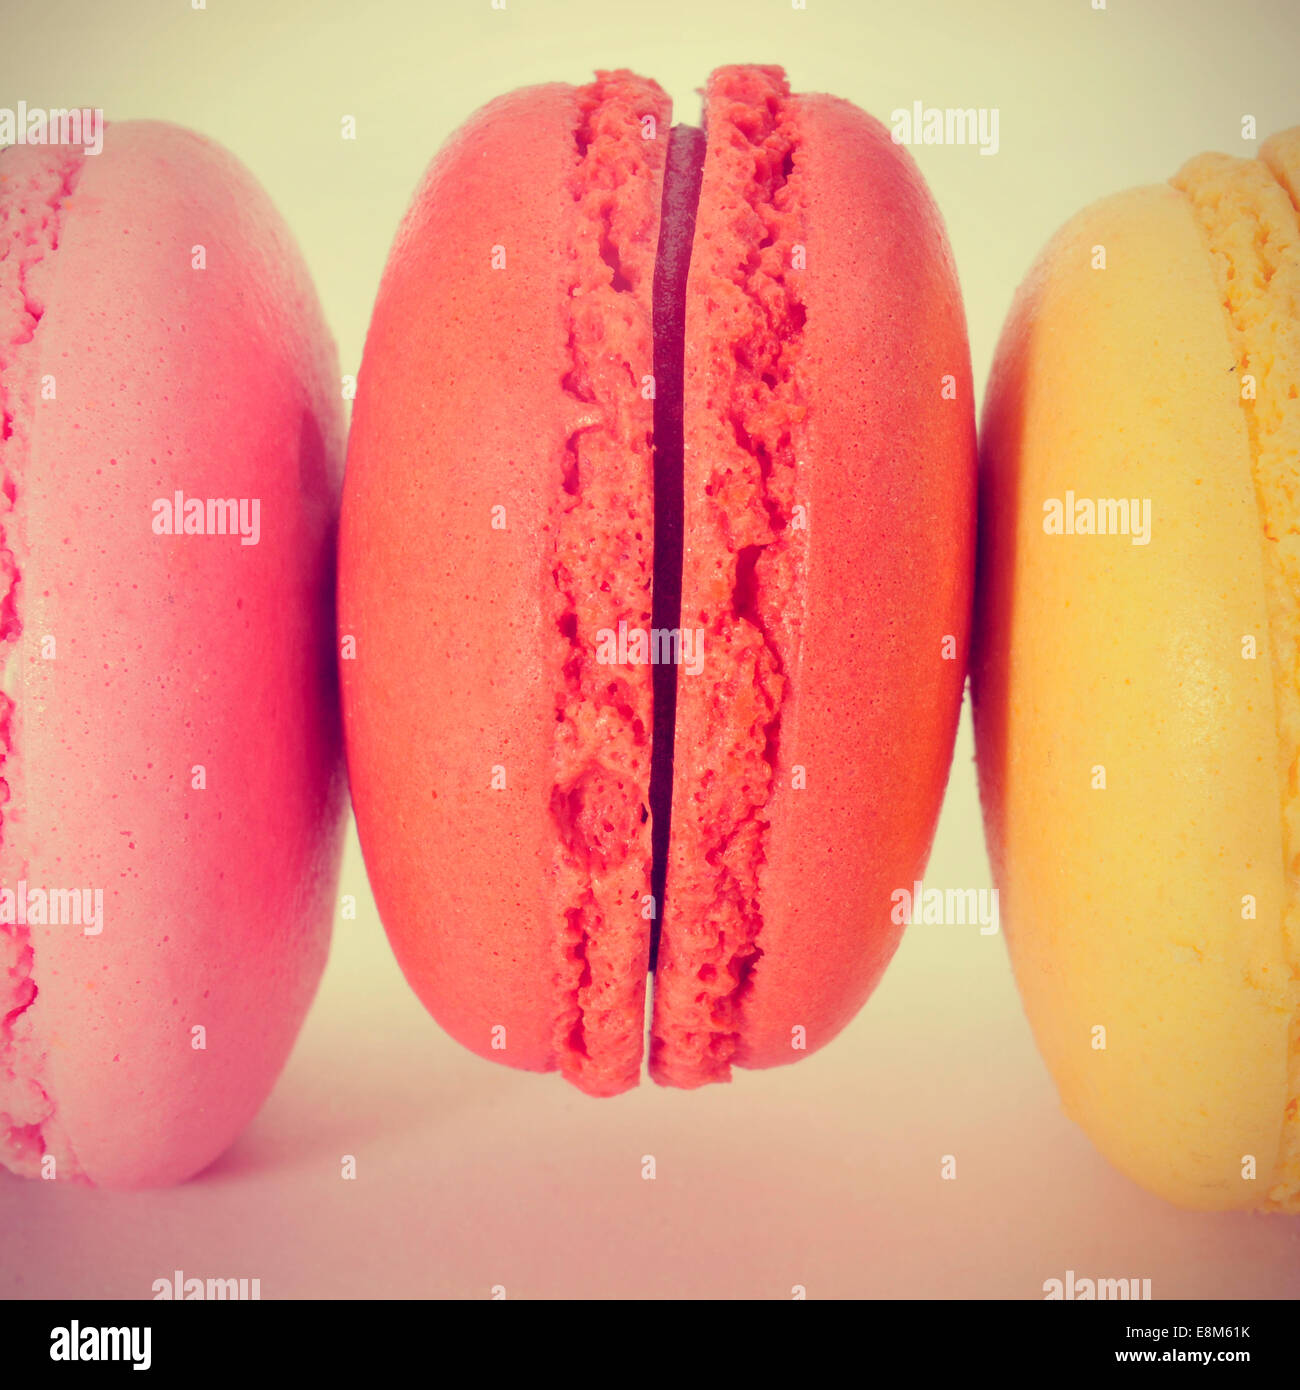 Primer plano de unas apetitosas macarons con diferentes colores y sabores, con un efecto retro Foto de stock